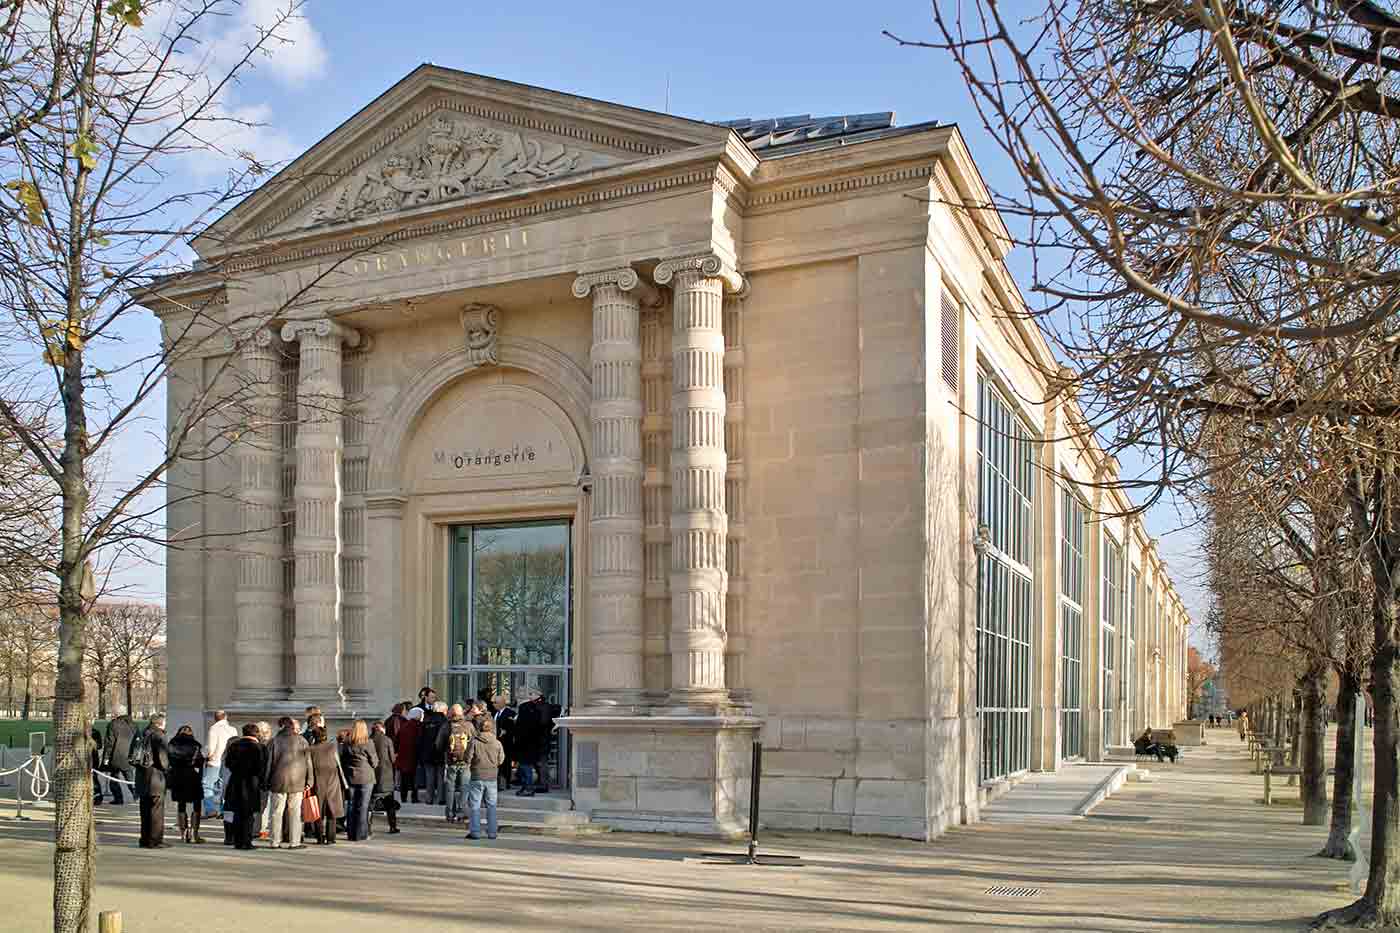 Orangerie Museum